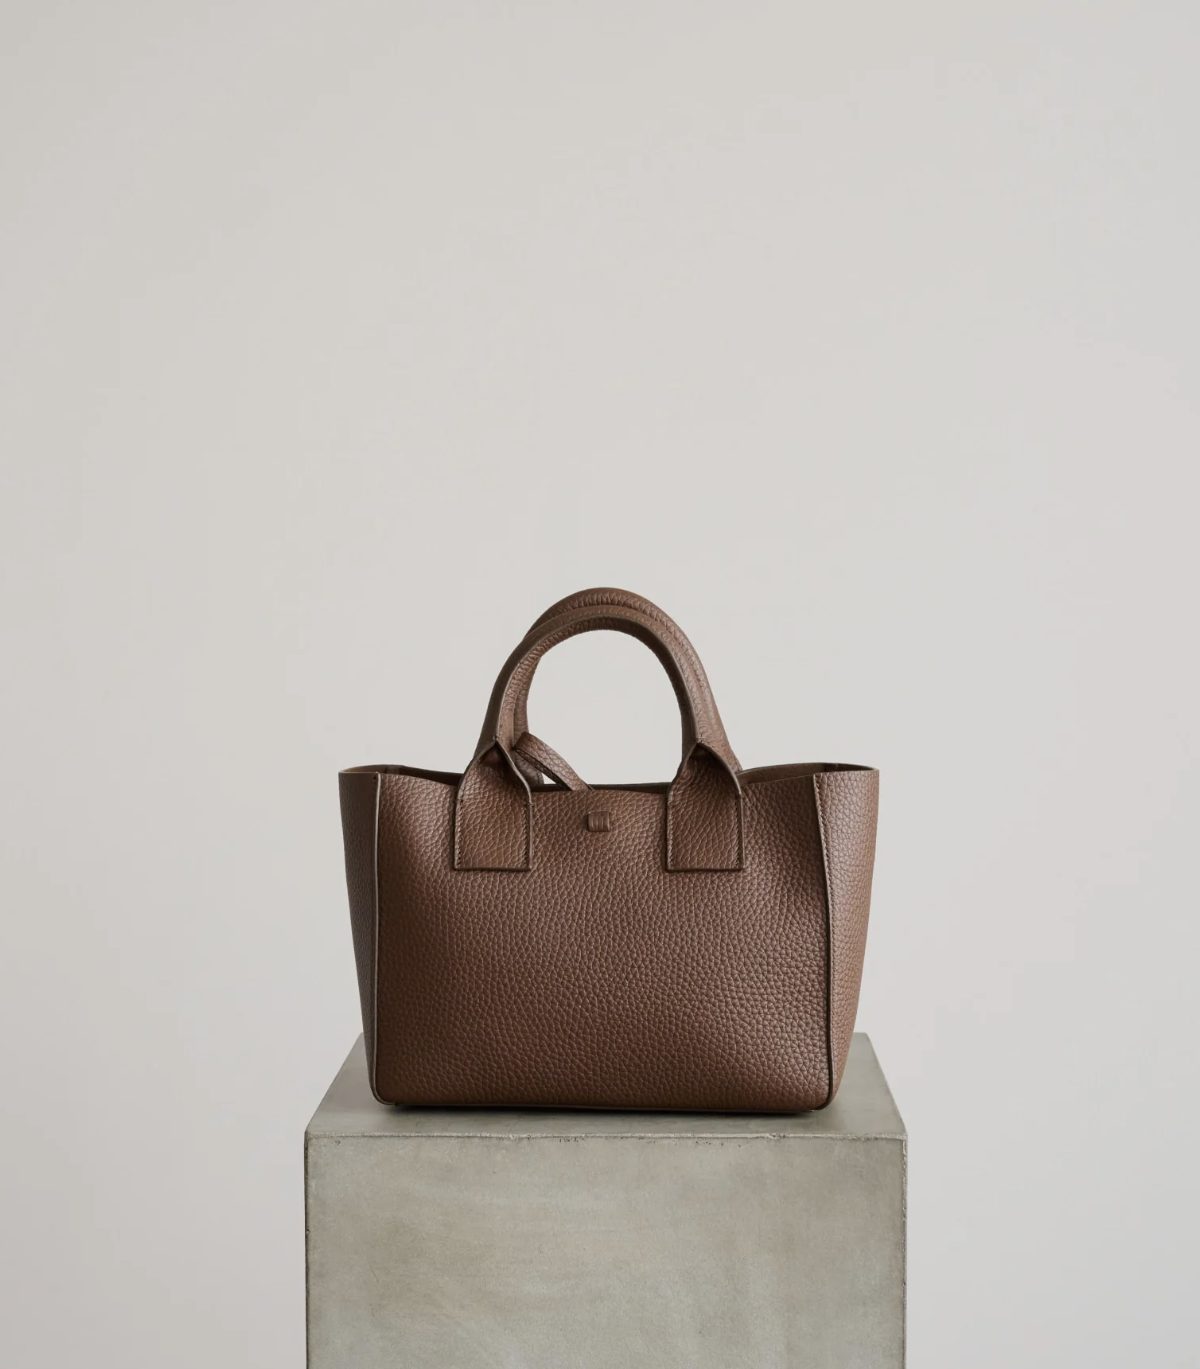 20 отличных дизайнерских сумок шоколадного оттенка